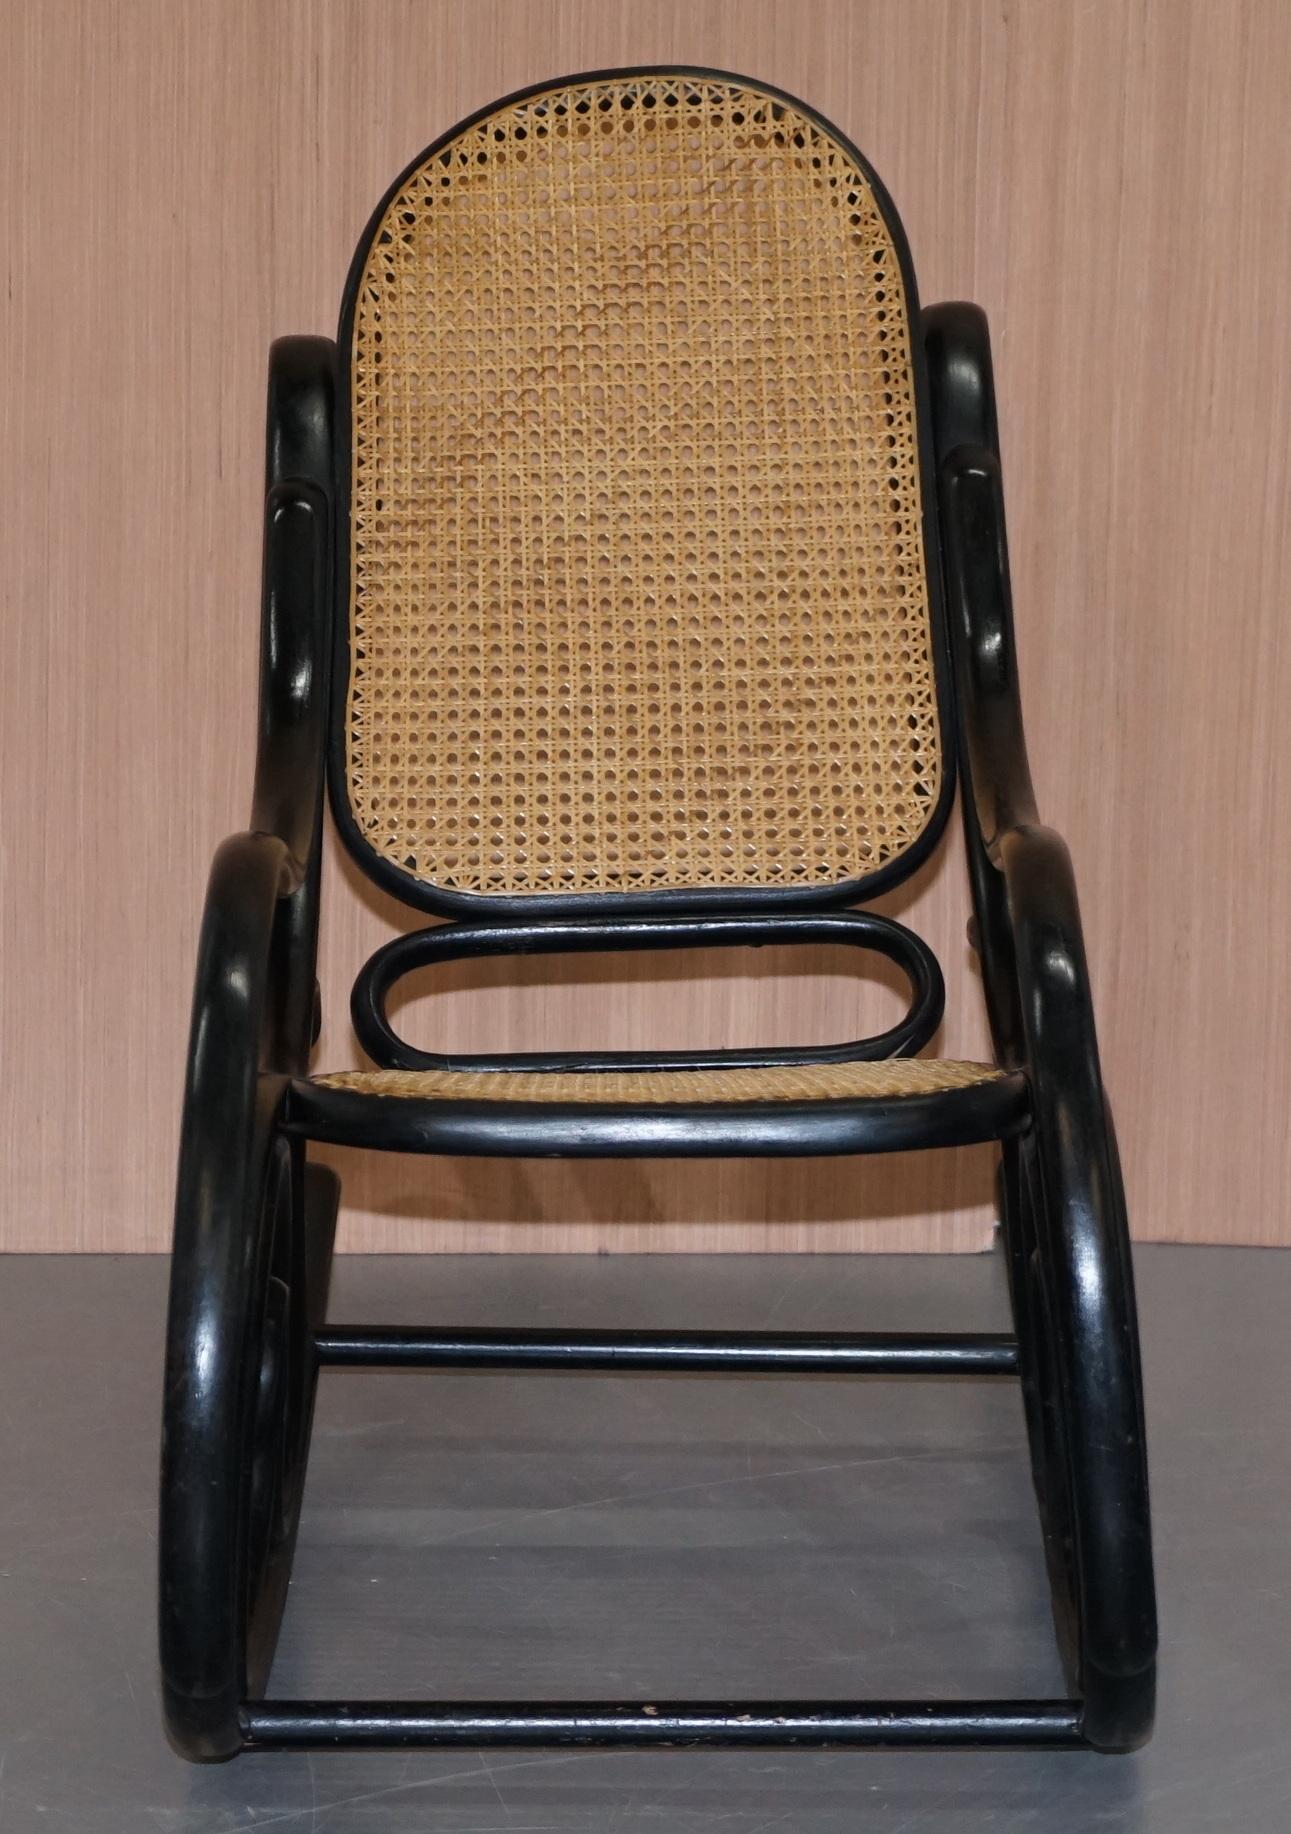 Nous sommes ravis de proposer à la vente ce joli petit fauteuil à bascule vintage Thonet avec un cadre noir ébonisé et un siège en rotin.

Conçue à l'origine dans les années 1800 avec des courbes élaborées et un siège et un dossier en canne